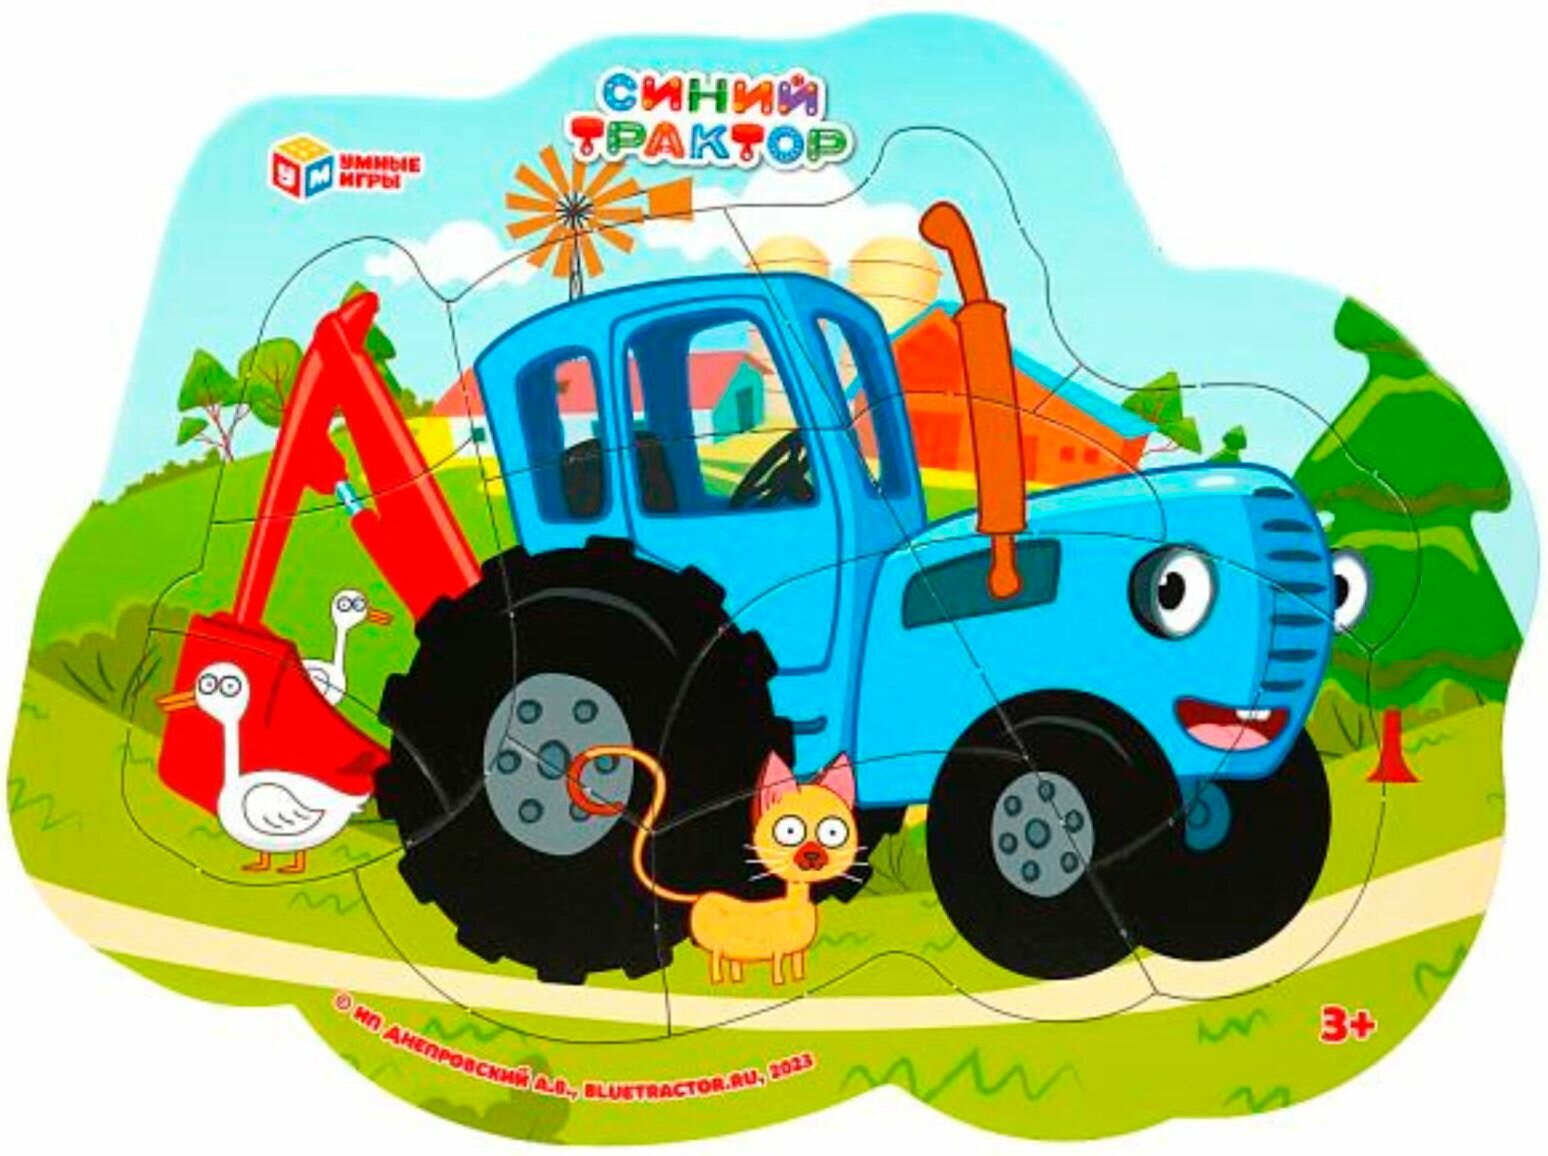 Фигурный пазл в рамке "Синий трактор", детская развивающая головоломка из 15 деталей, рамка-вкладыш, развиваем мелкую моторику